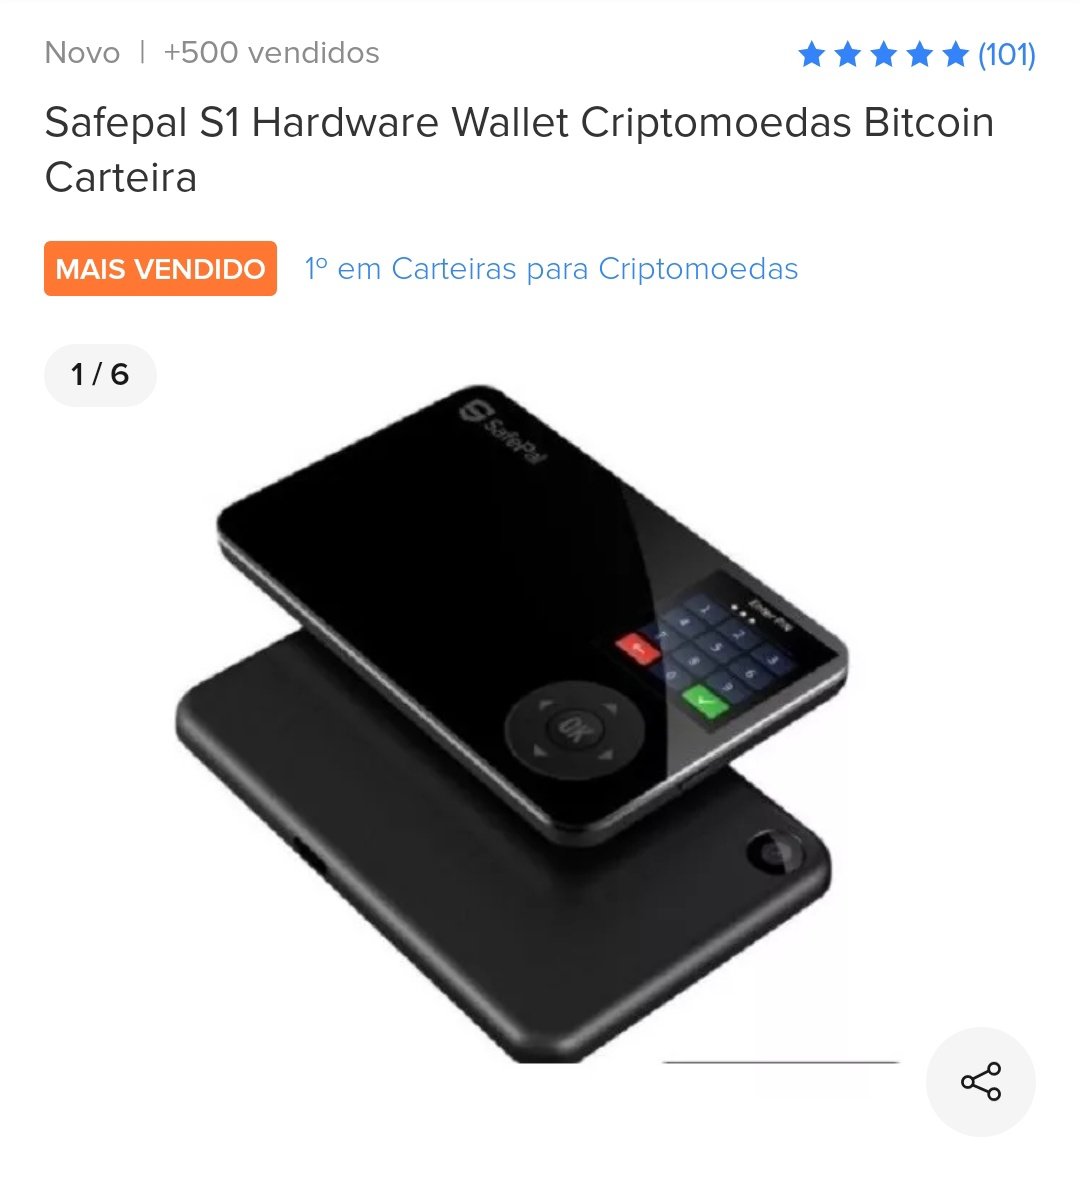 Alguém aí sabe me dizer se o hardware wallet da Safepal é seguro?

Ou sabem indicar algum wallet hardware que não fique sendo enviado para os queridos coletores de impostos?